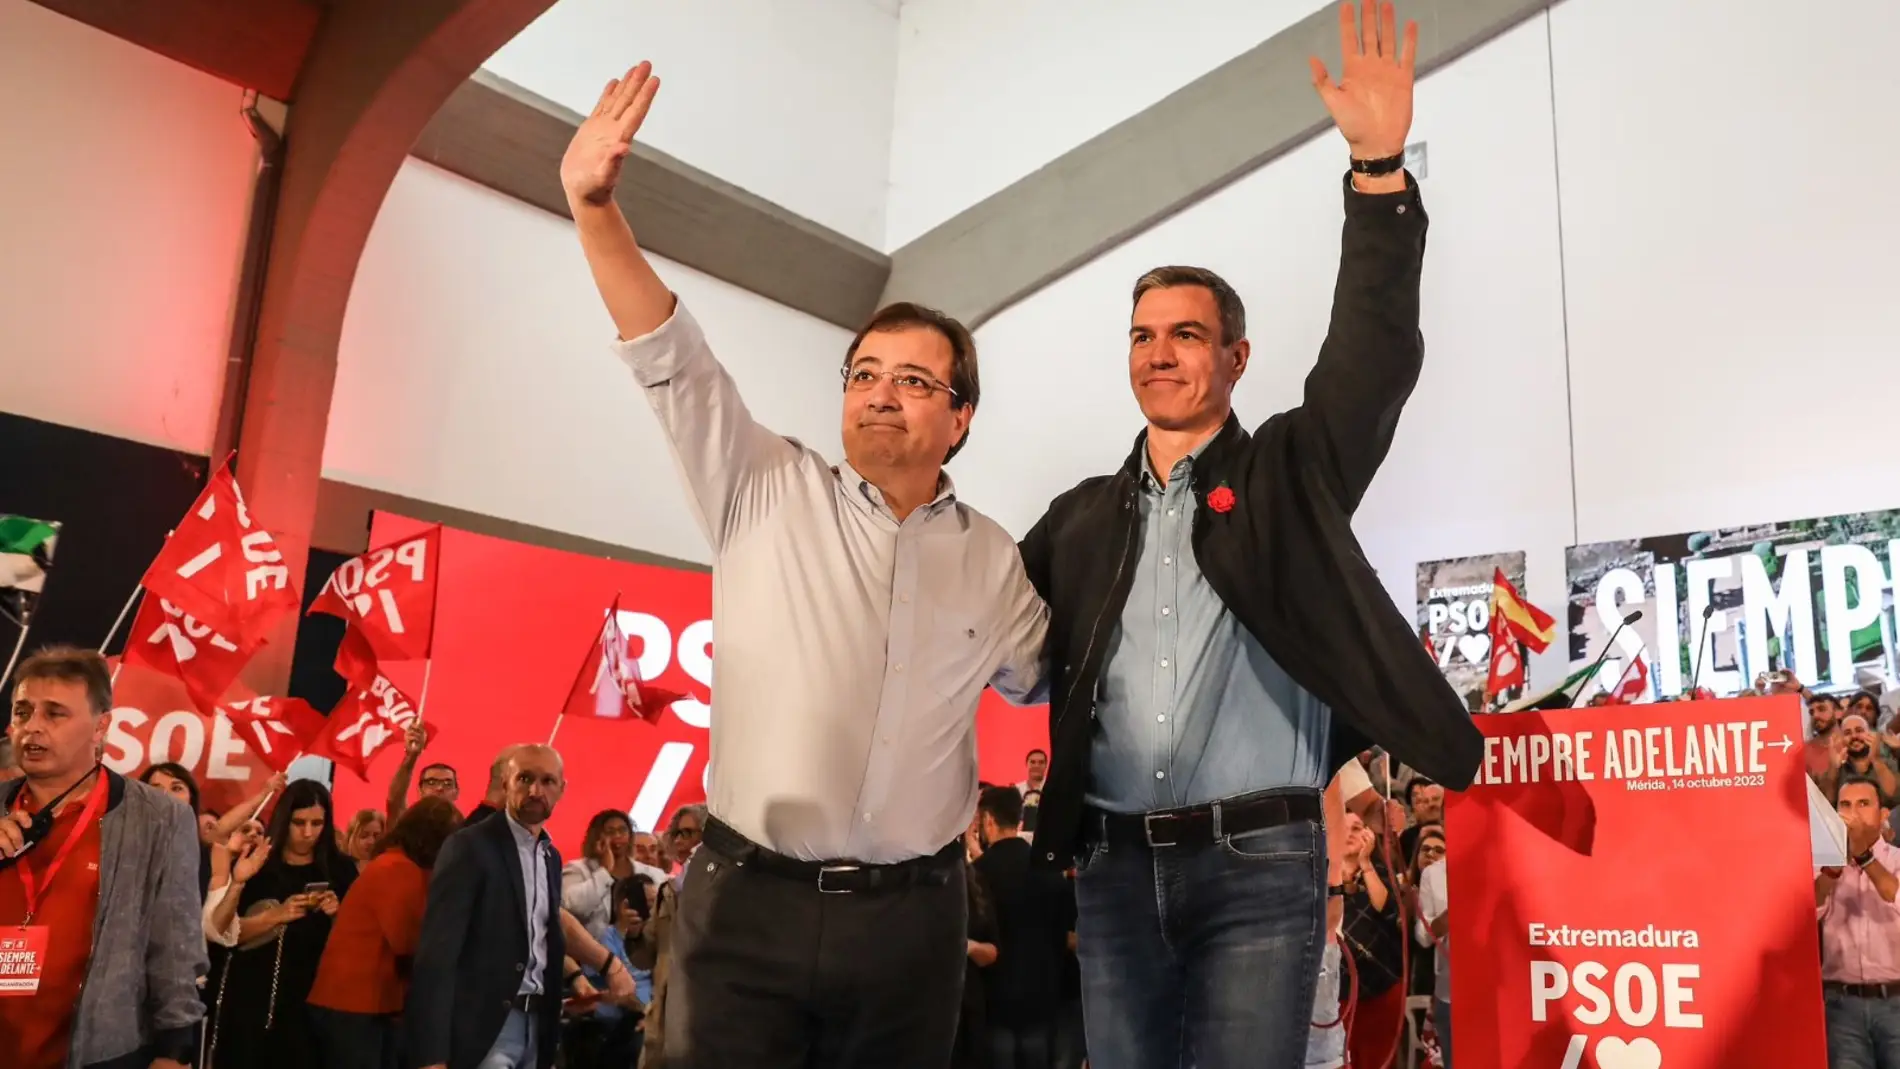 Pedro Sánchez asegura en Mérida que "dentro de poco" volverá a haber una mayoría parlamentaria del PSOE en Extremadura